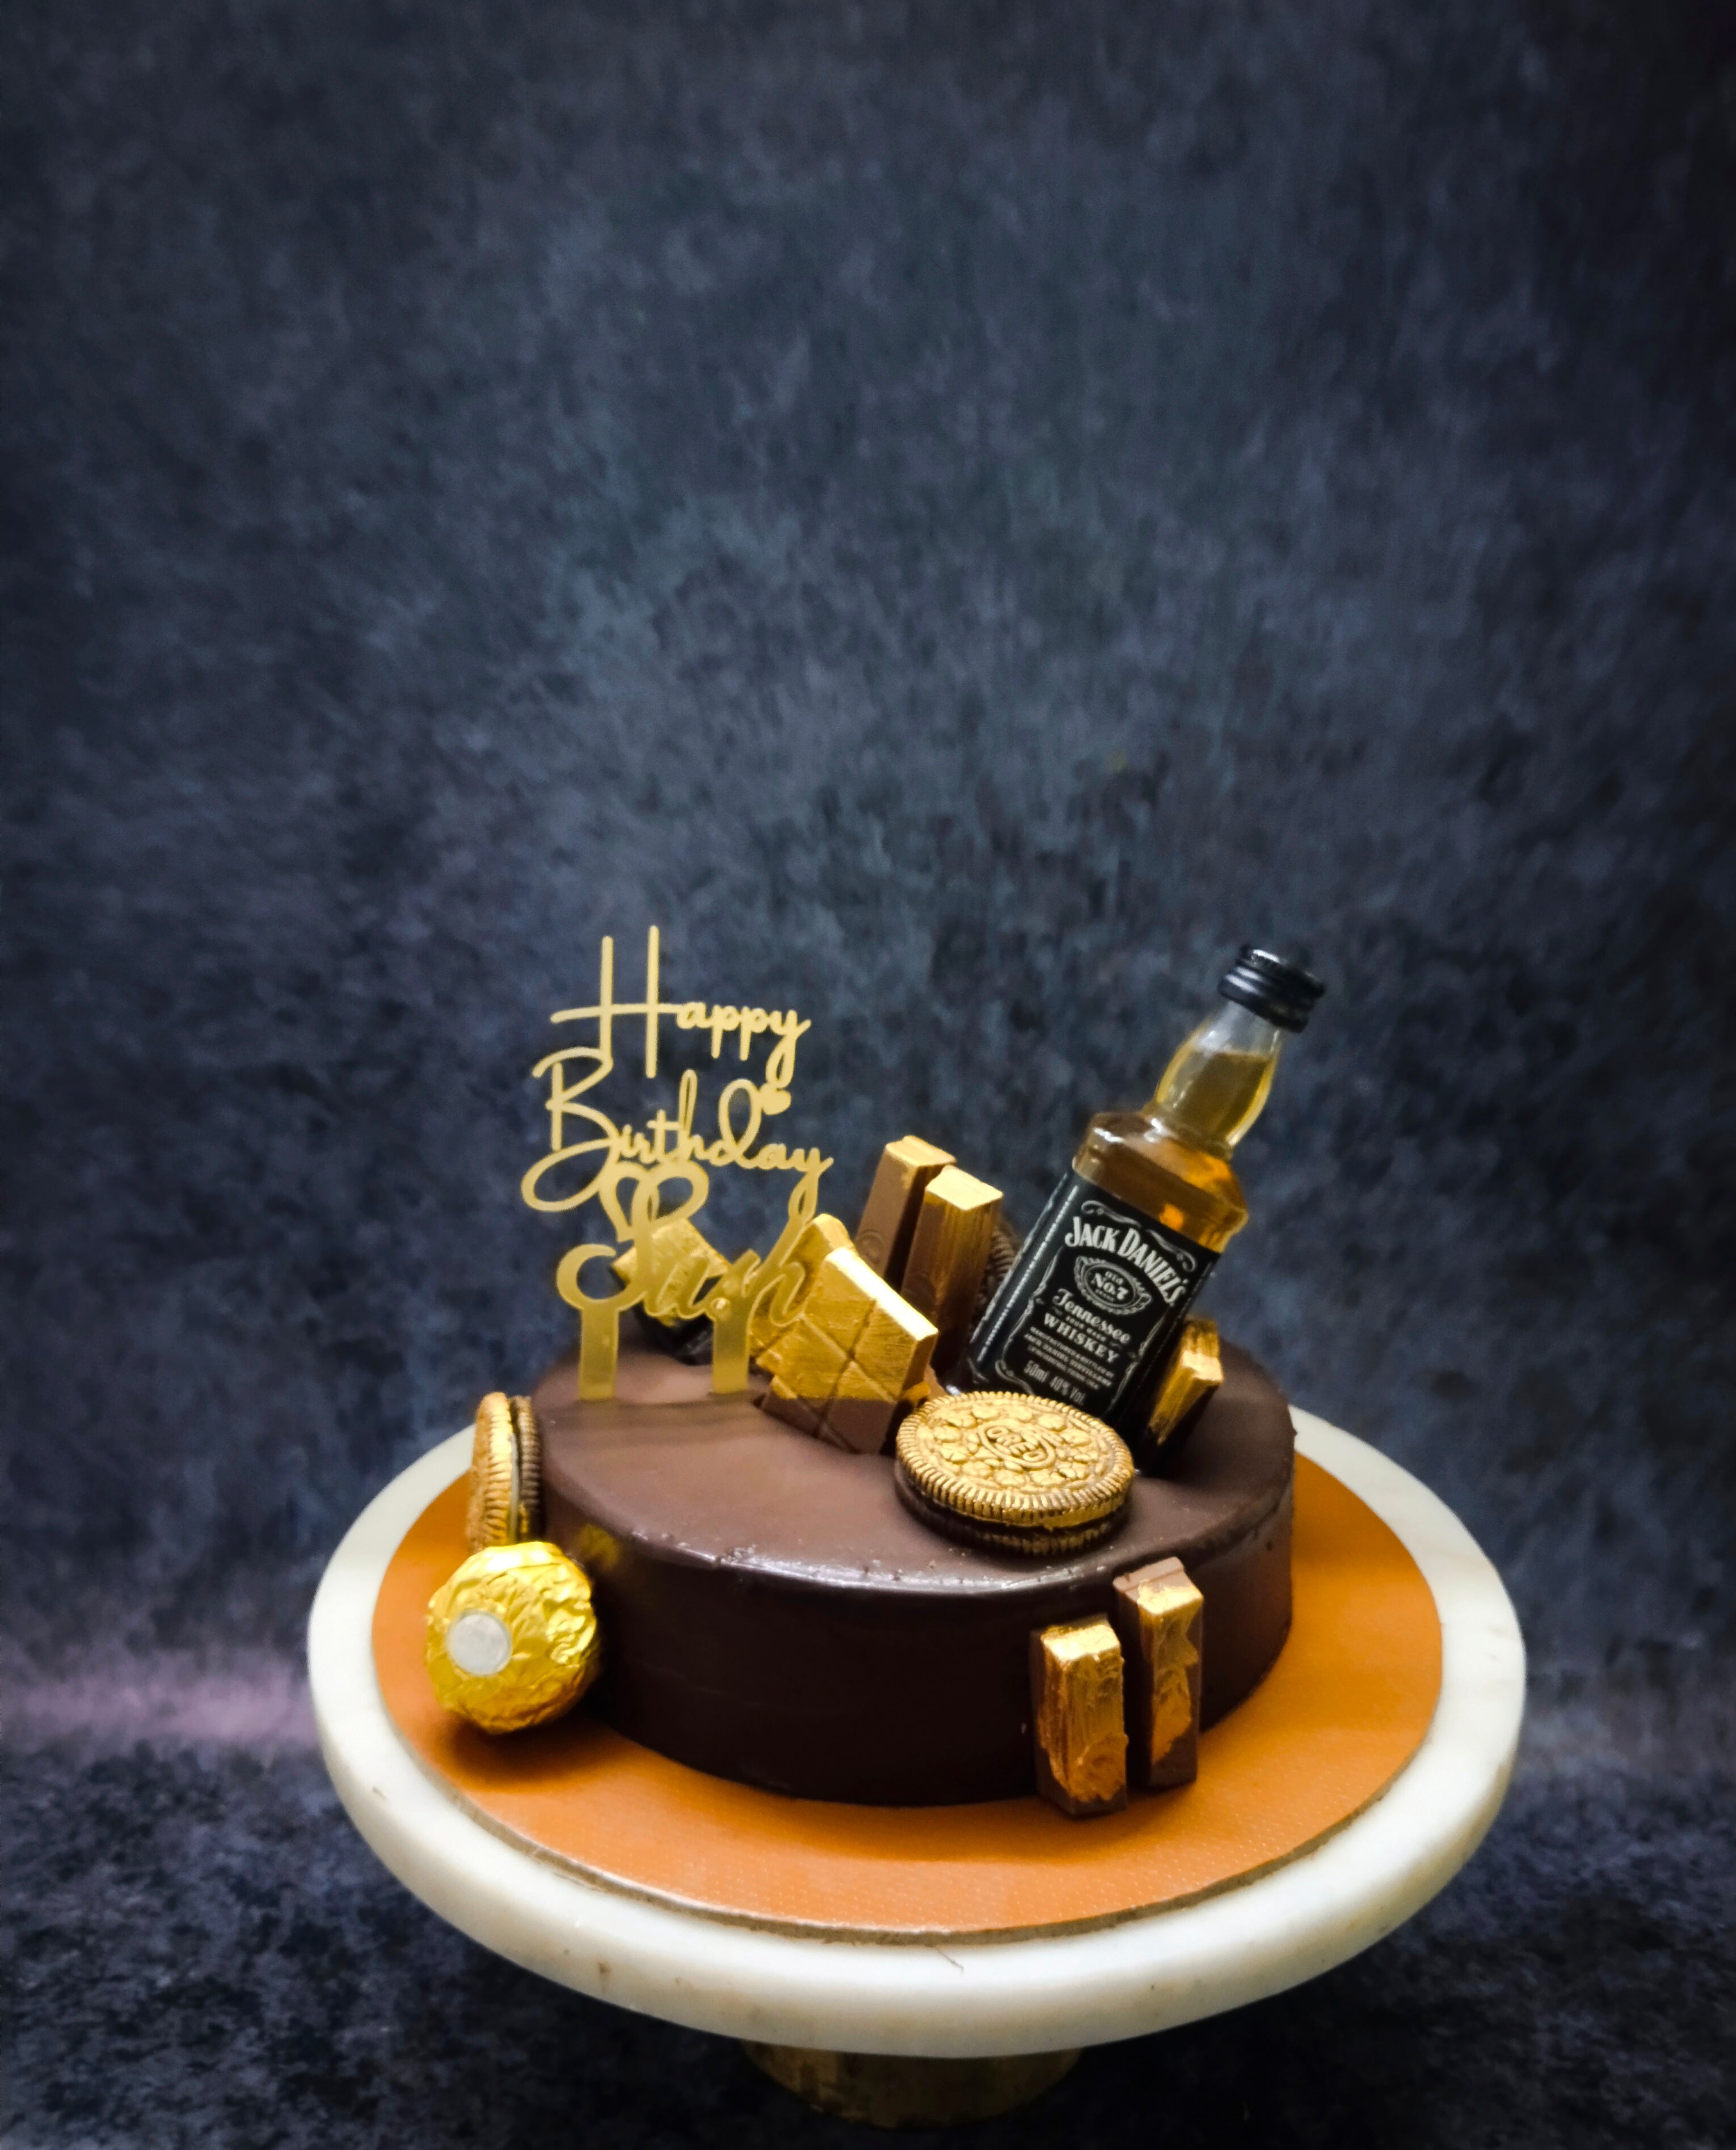 Chocolate with liquor bottle cake | Subash Bakery